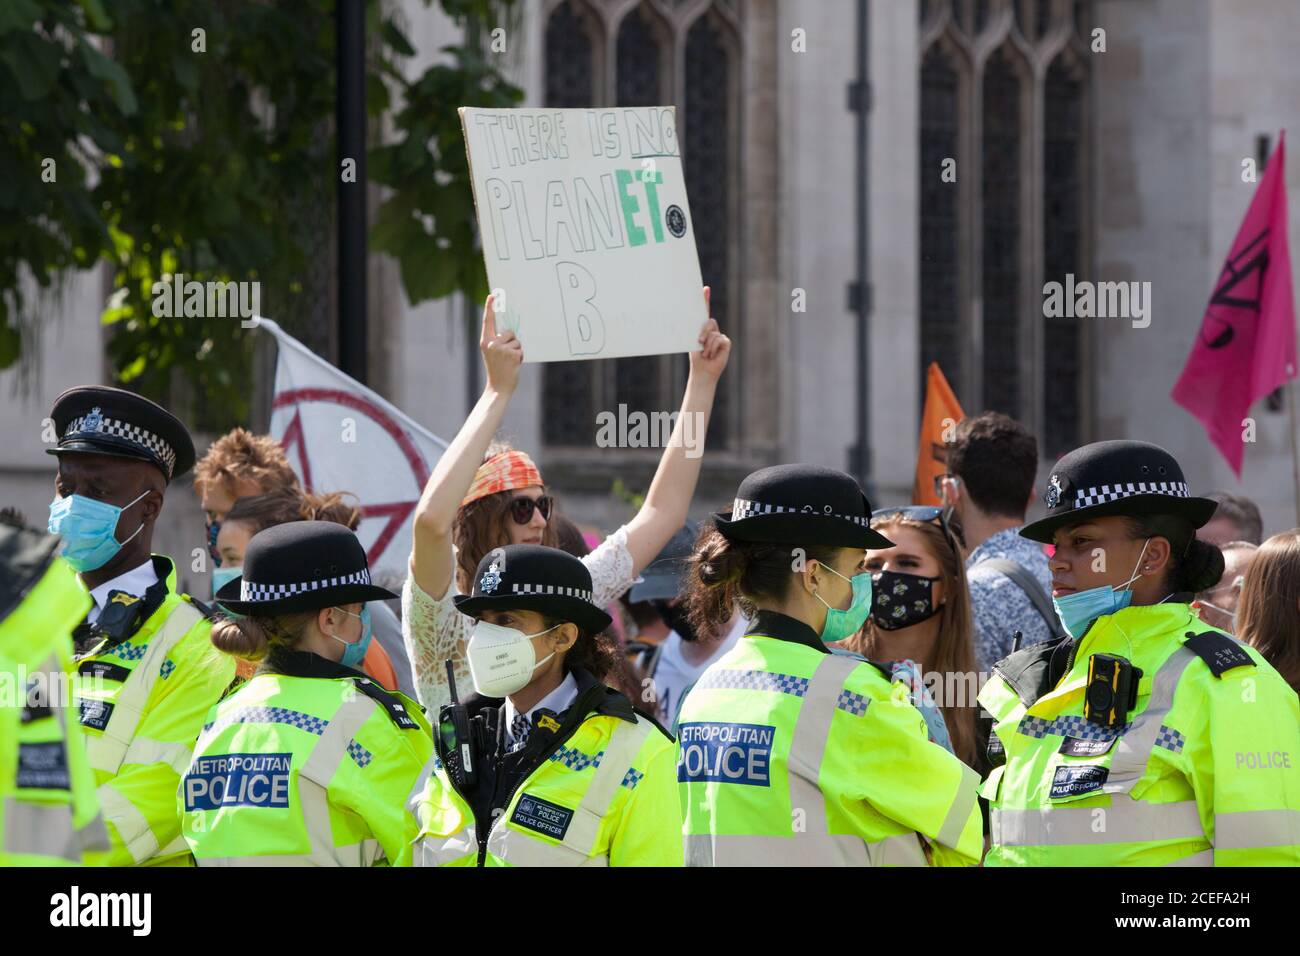 London, Großbritannien, 1. Sept. 2020: Die Rebellion des Aussterbens Demonstranten marschierten auf dem Parliament Square und durchbrochen die Polizeilinien, um die umliegenden Straßen zu schließen. Es wurden einige Verhaftungen vorgenommen. Die Umweltaktivisten fordern die Abgeordneten auf, das "Climate and Ecological Emergencies Bill" (CEE Bill) zu unterstützen. Anna Watson/Alamy Live News Stockfoto